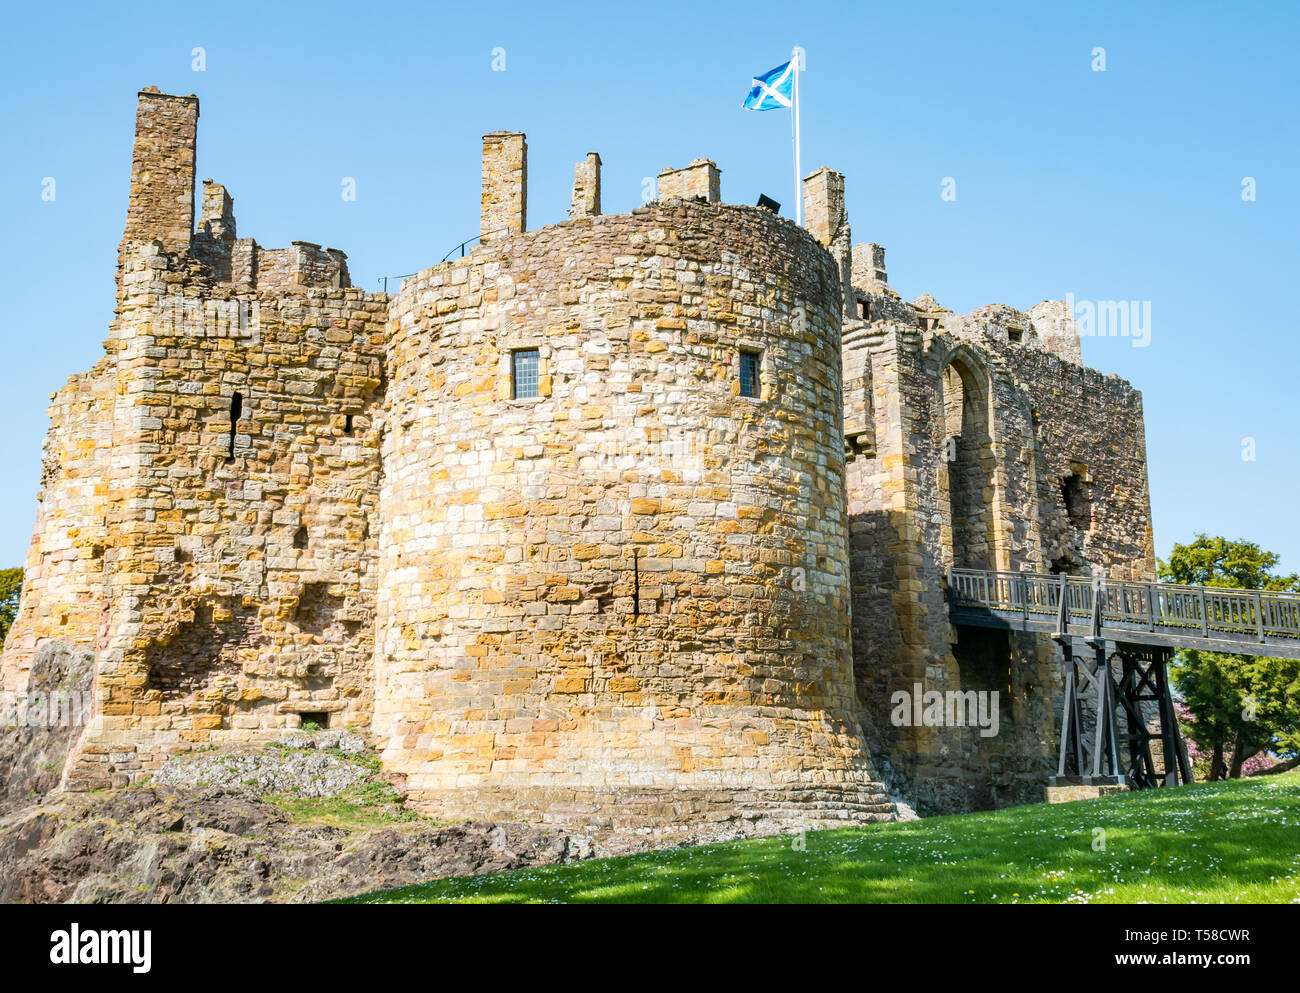 Mittelalterliche 13. Jahrhundert Dirleton Castle Festung mit Burggraben, beliebte Besucherattraktion, East Lothian, Schottland, Großbritannien mit blauer Himmel Stockfoto